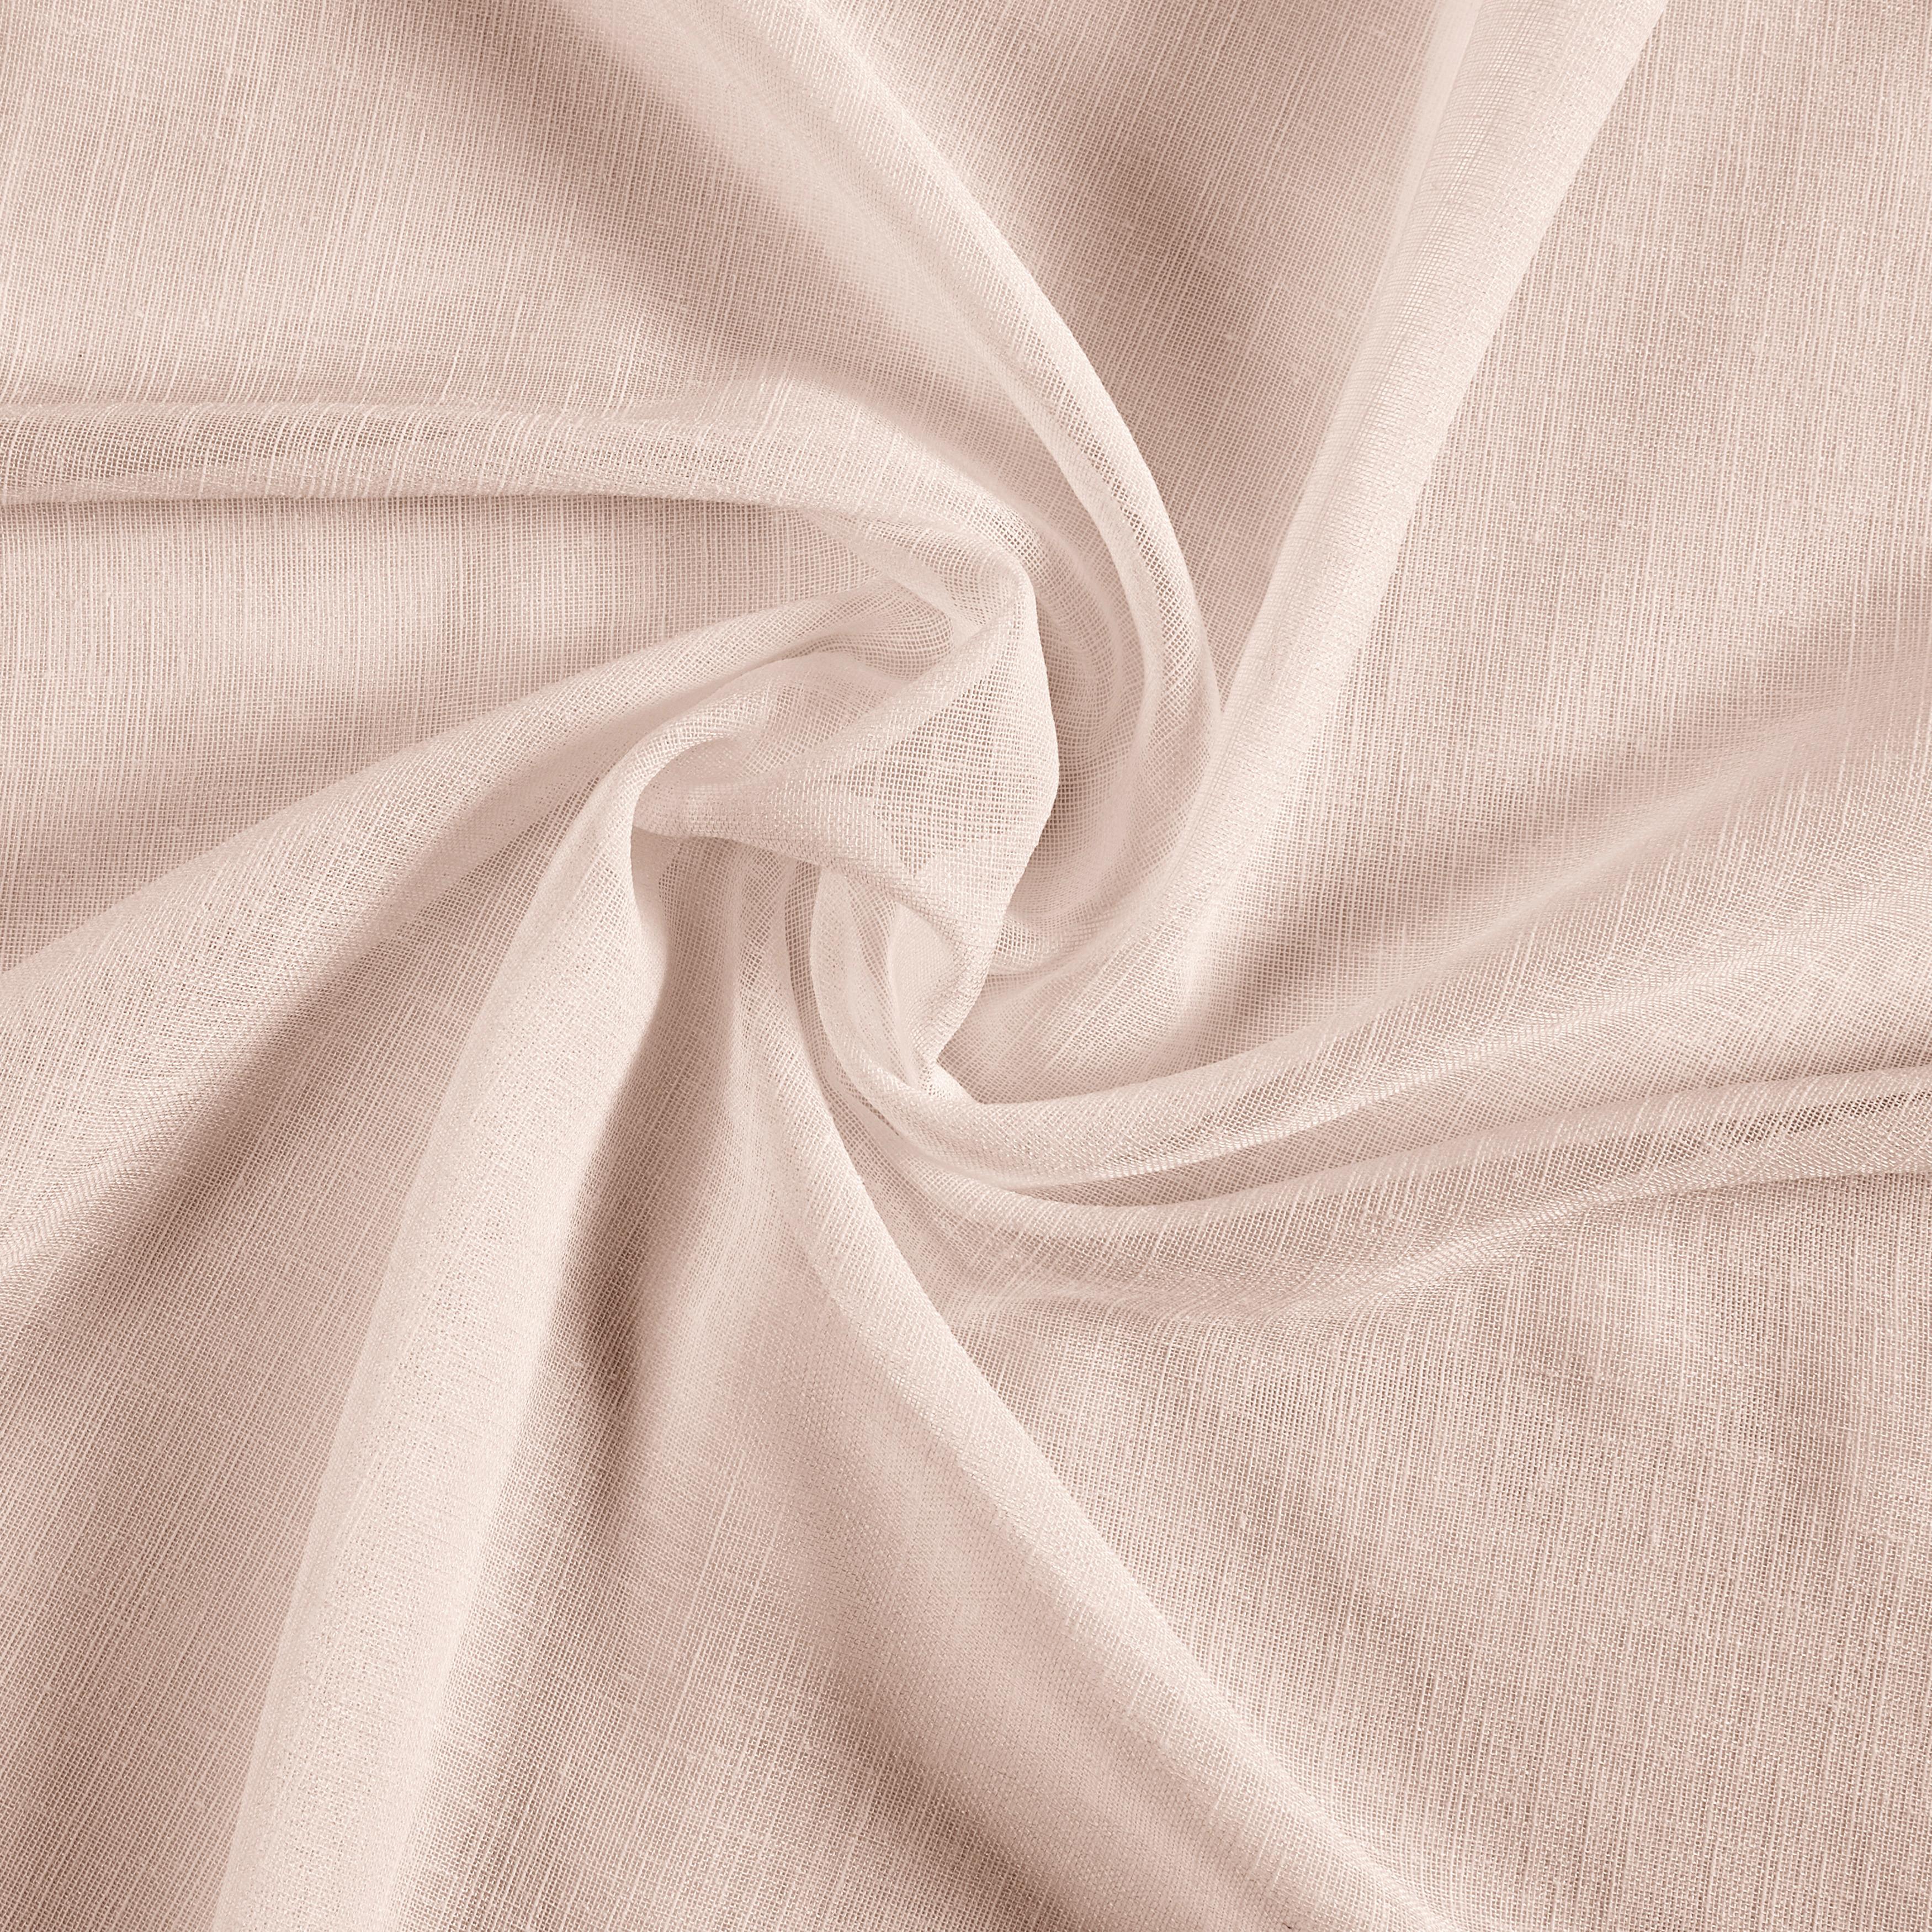 Závěs Sigrid, 140/245 Cm - růžová, Romantický / Rustikální, textil (140/245cm) - Premium Living